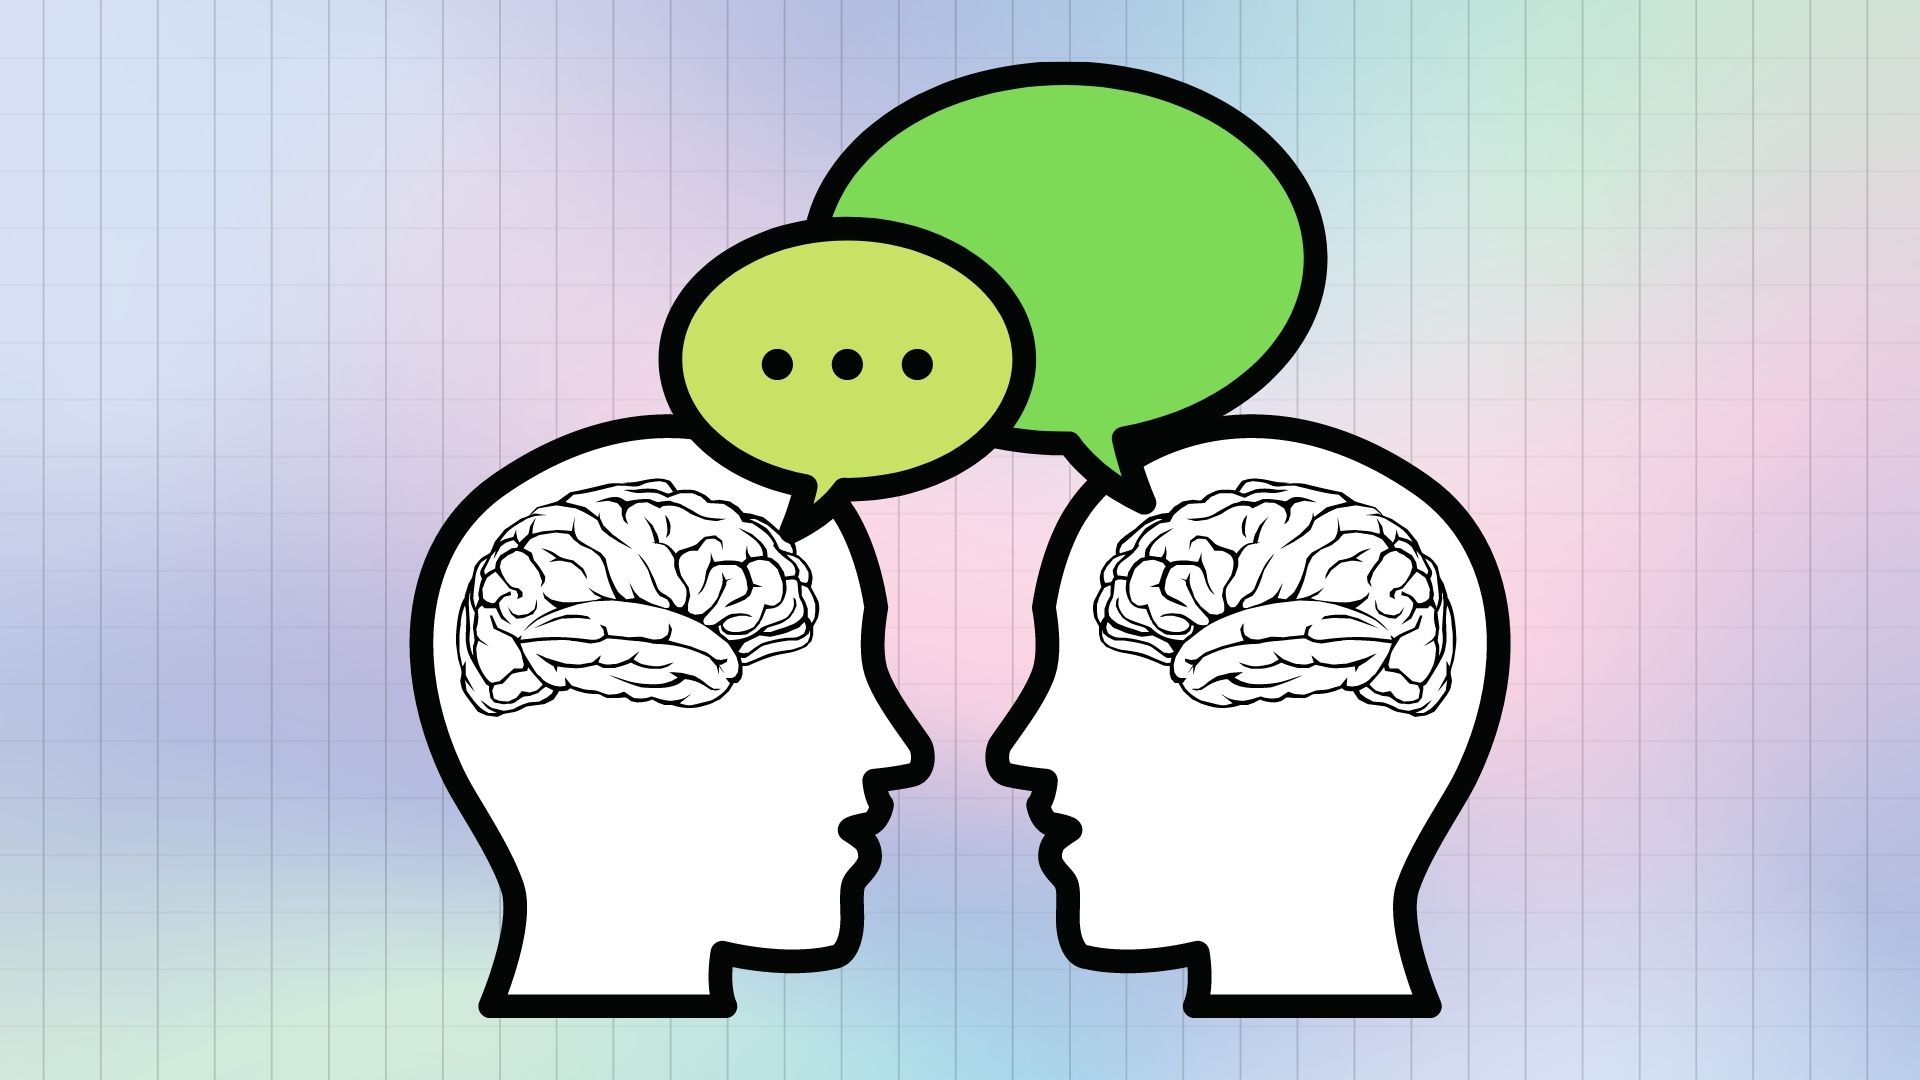 Otak, bahasa, dan perbedaan pada bilingual